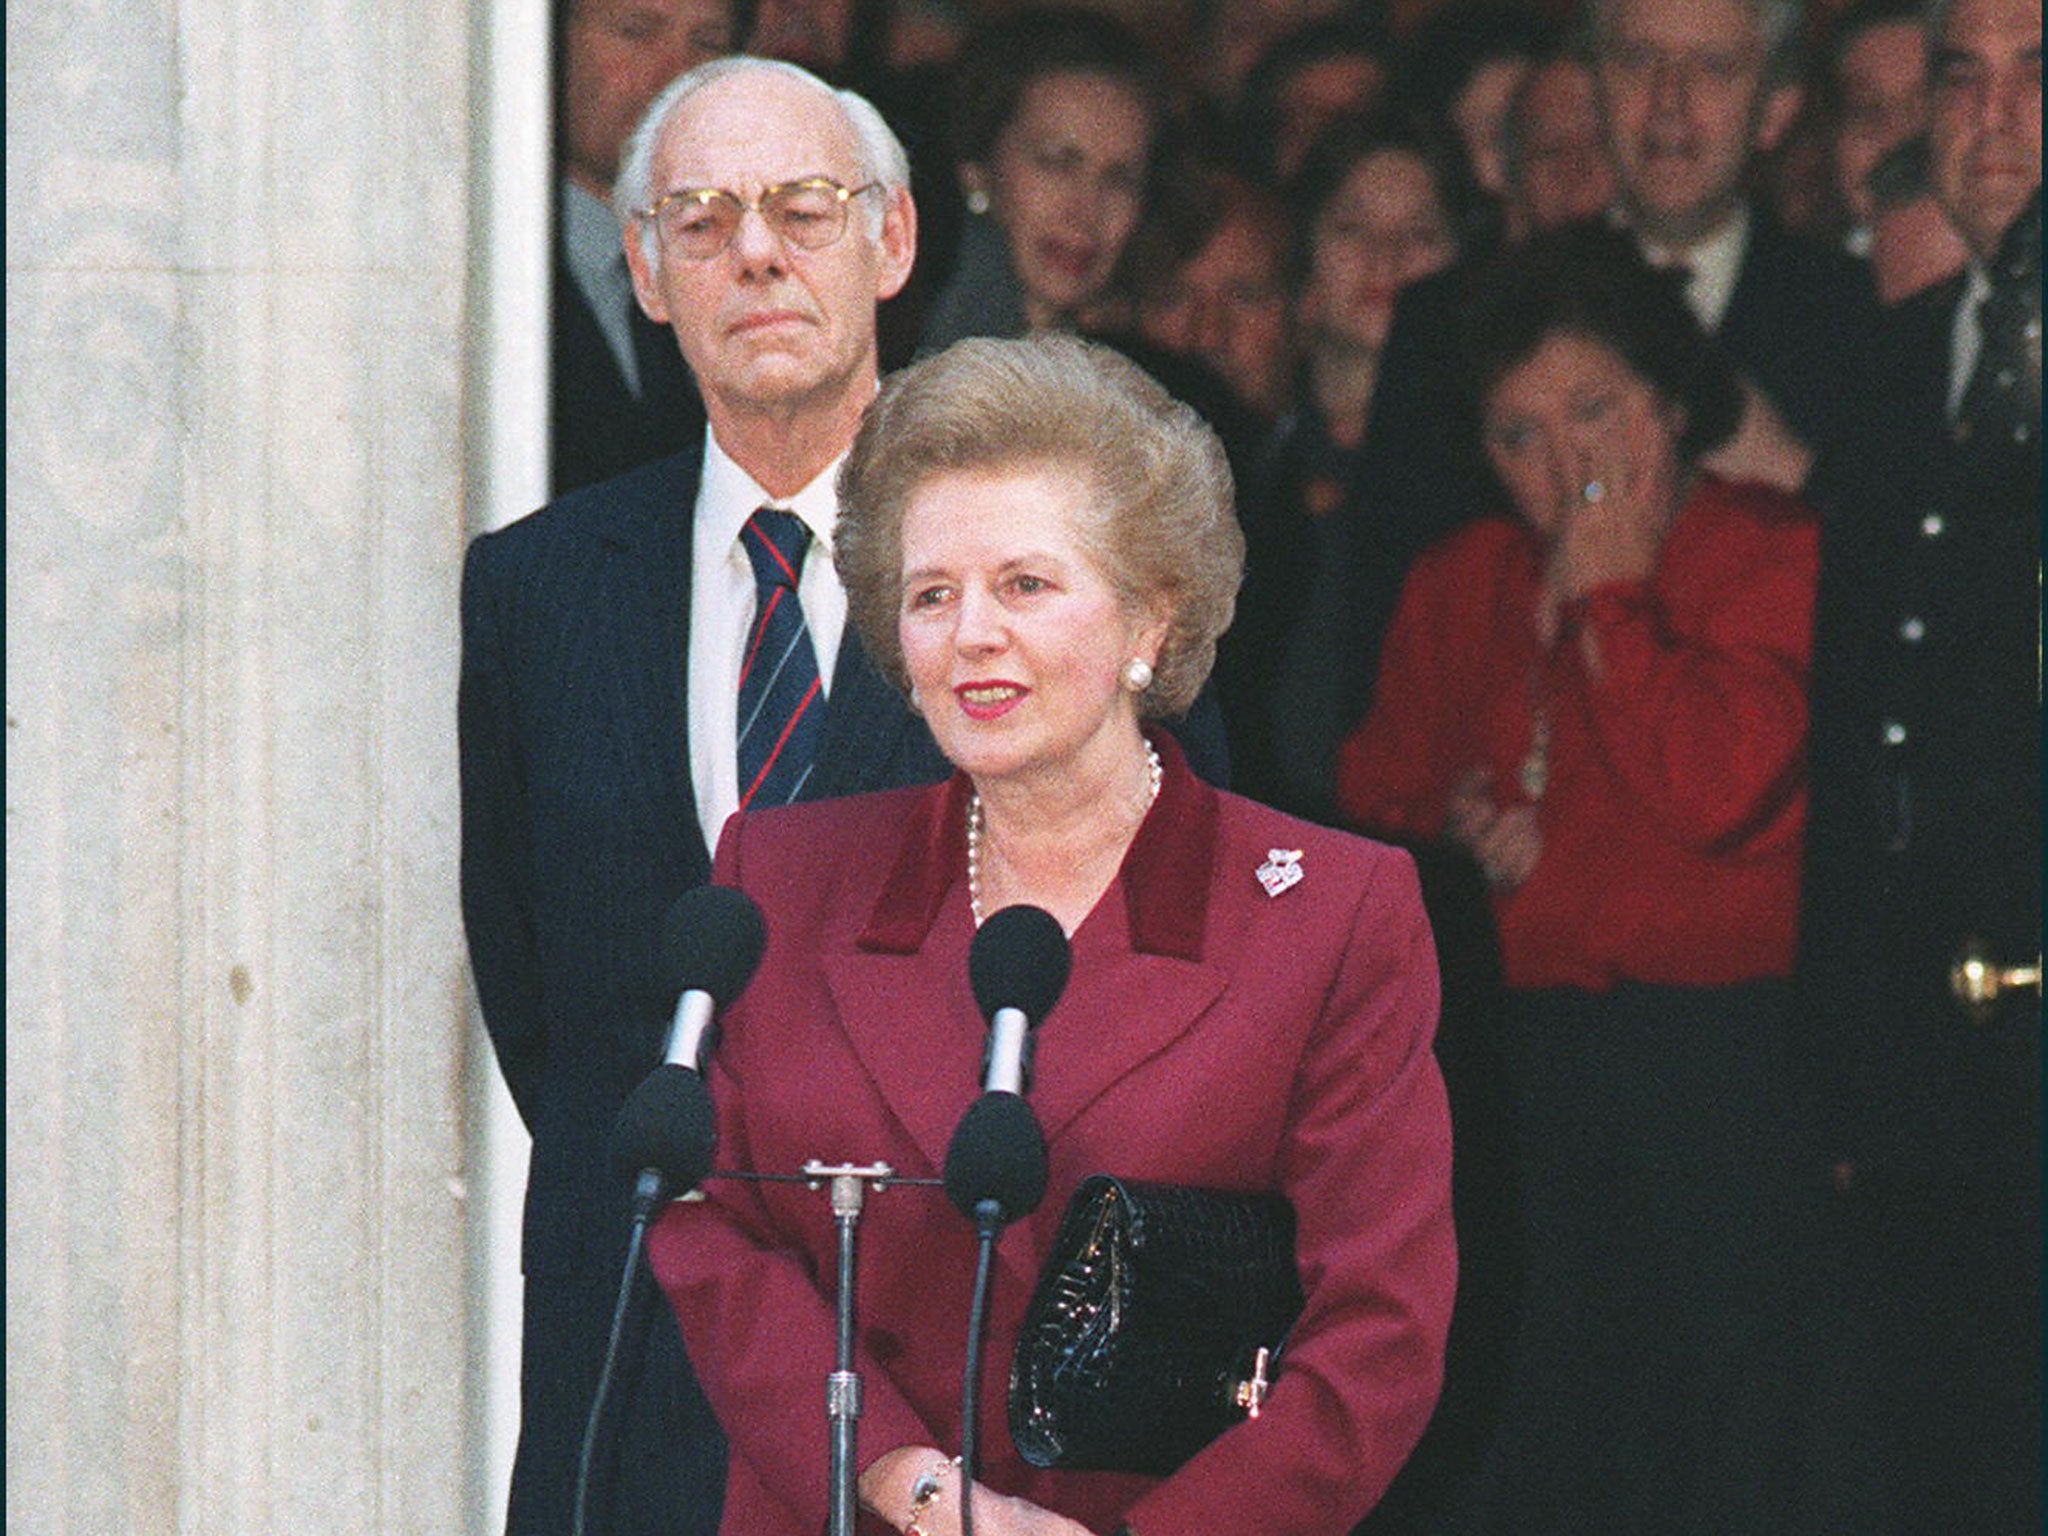 Margaret Thatcher resigned on 22nd November 1990